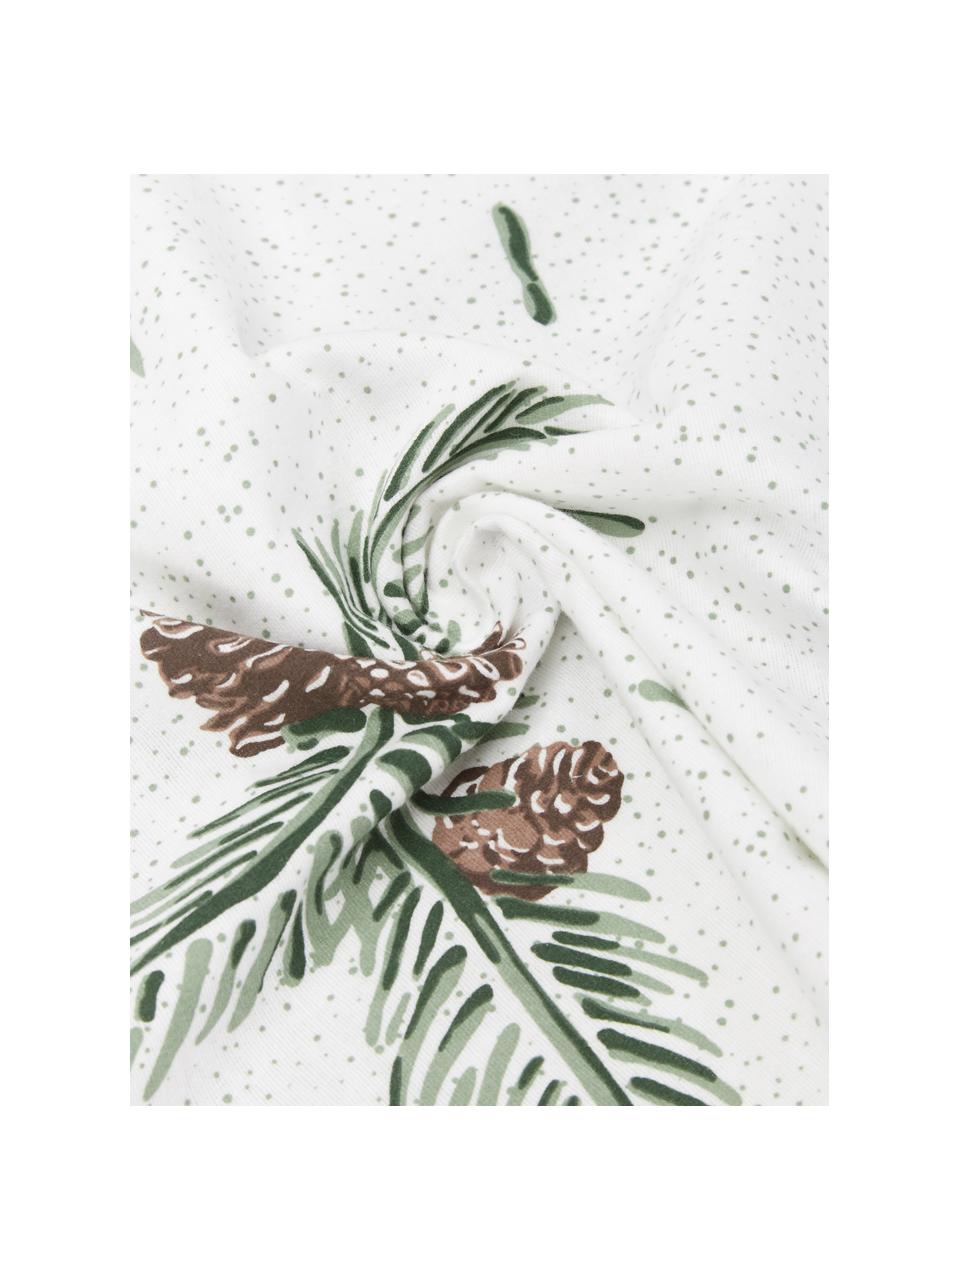 Flanell-Bettwäsche Pinecone mit winterlichem Muster, Webart: Flanell, Weiß, Grün, 135 x 200 cm + 1 Kissen 80 x 80 cm